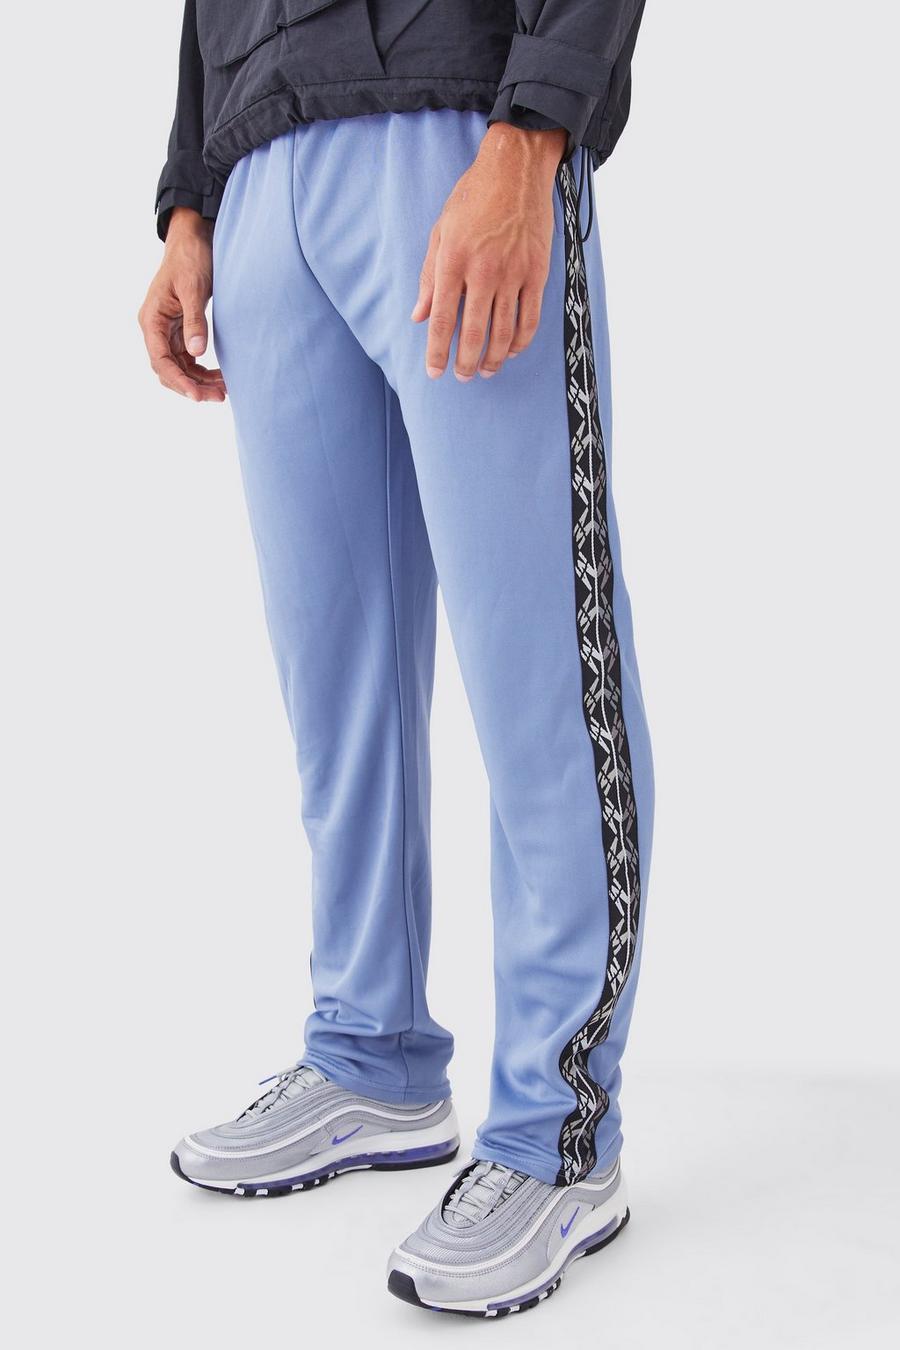 Pantaloni tuta Regular Fit in tricot con striscia laterale, Slate blue azul